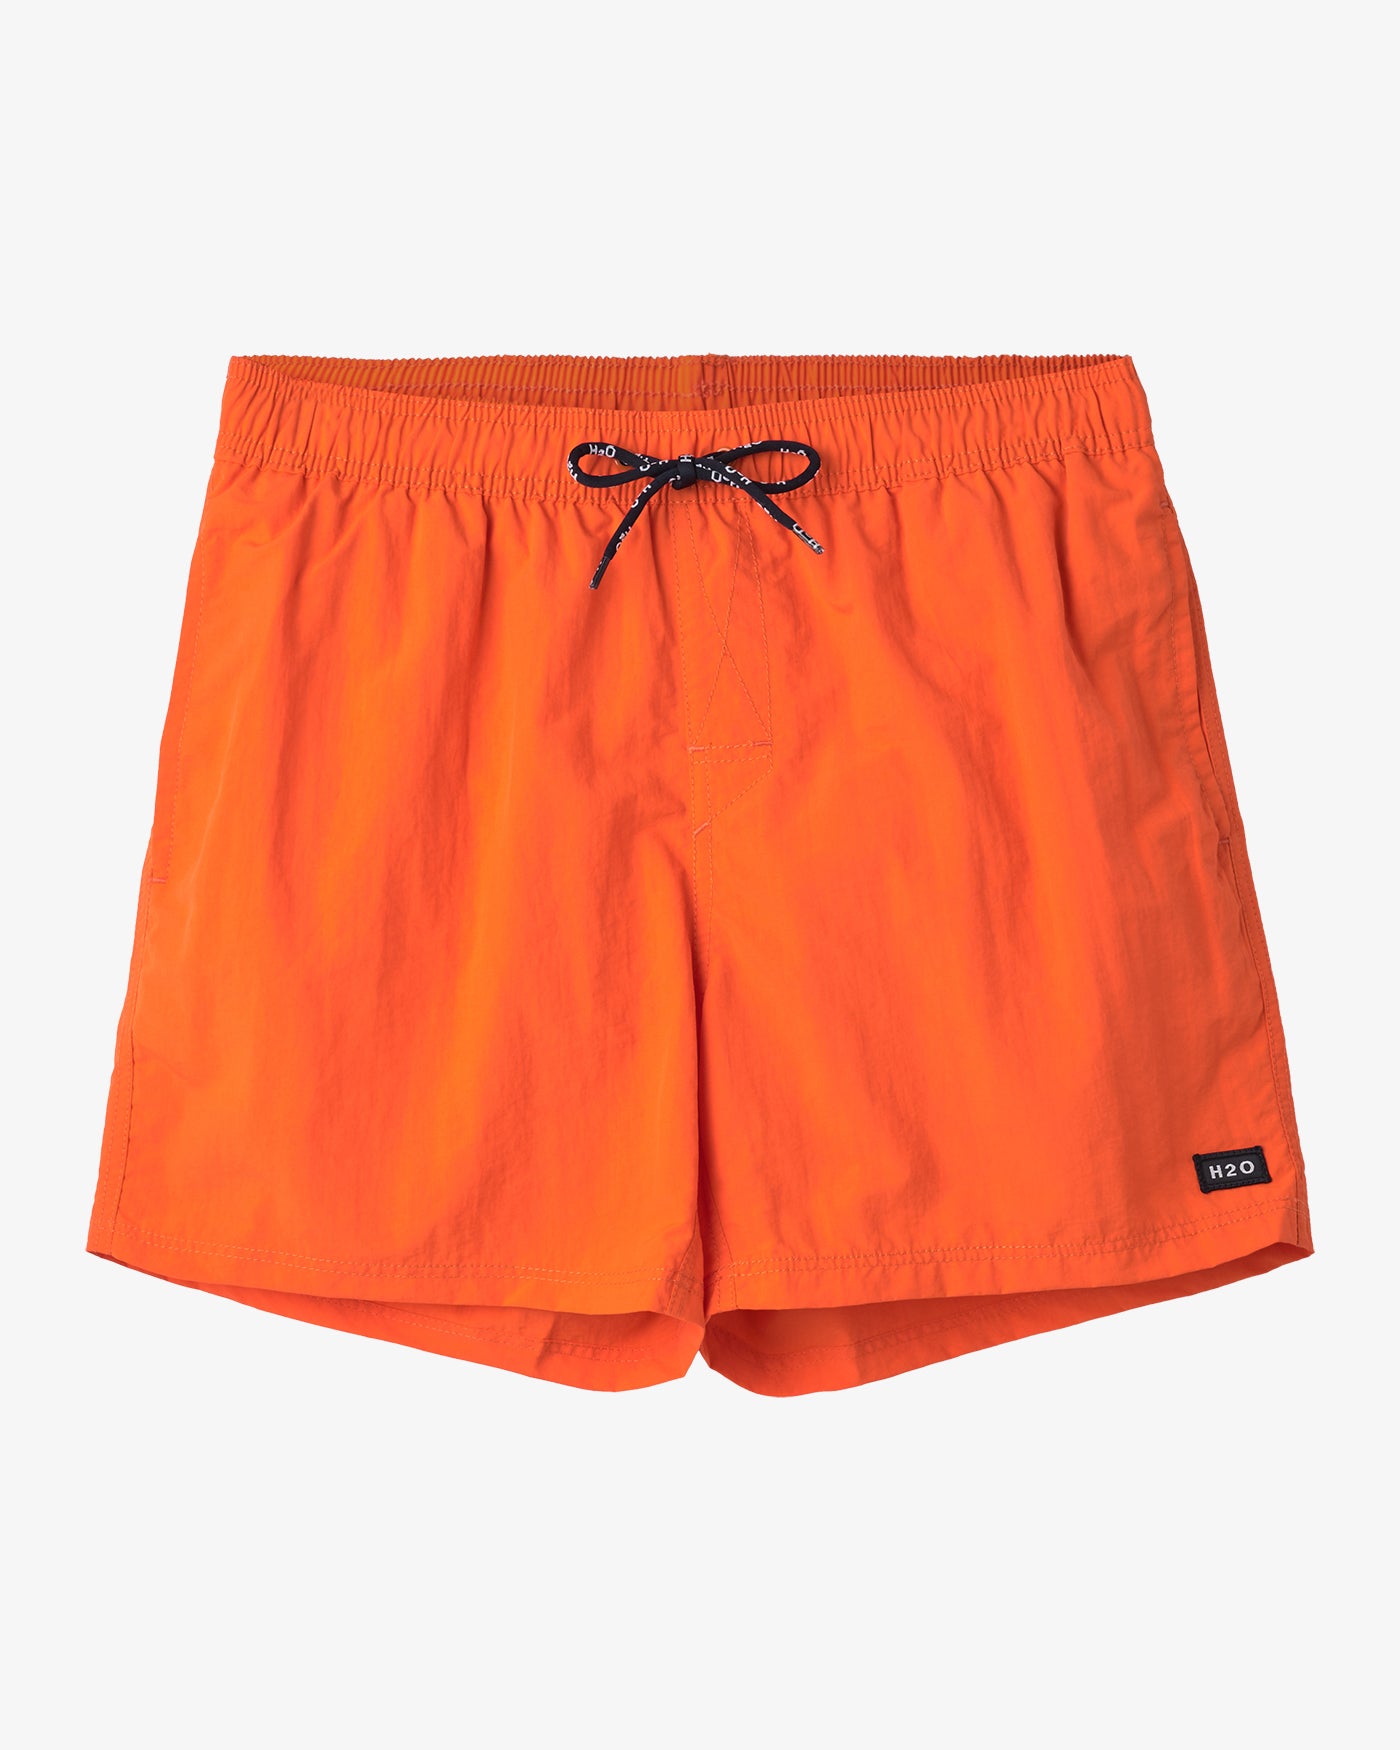 H2O Basic Leisure Badeshorts Shorts 2050 Orange